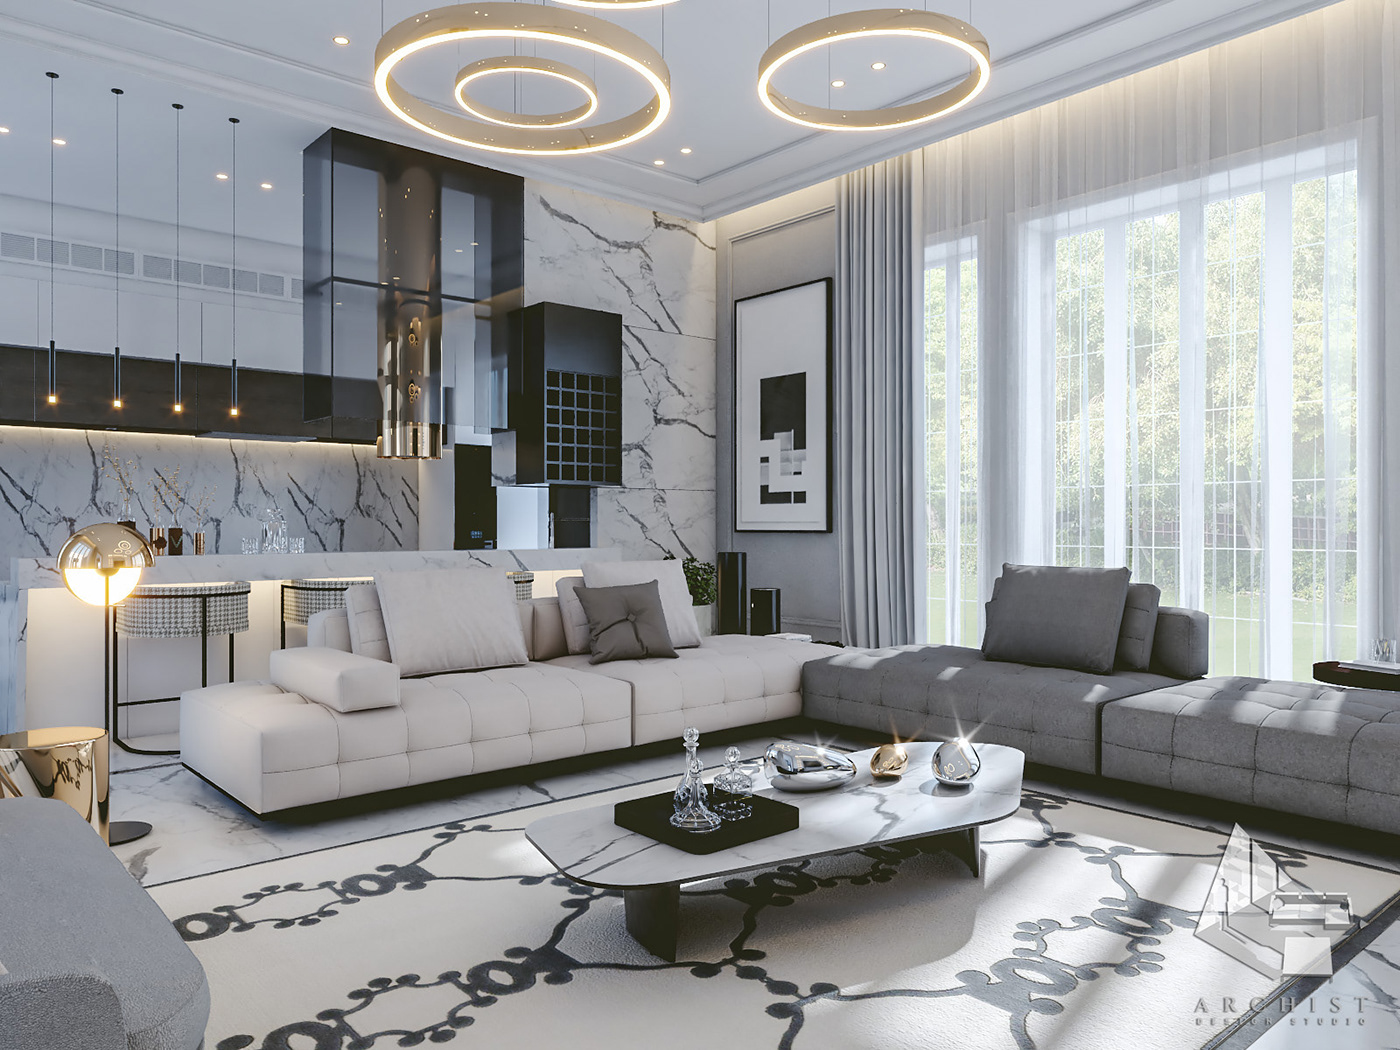 archist dubai egypt kitchen livingroom modern Residence UAE White